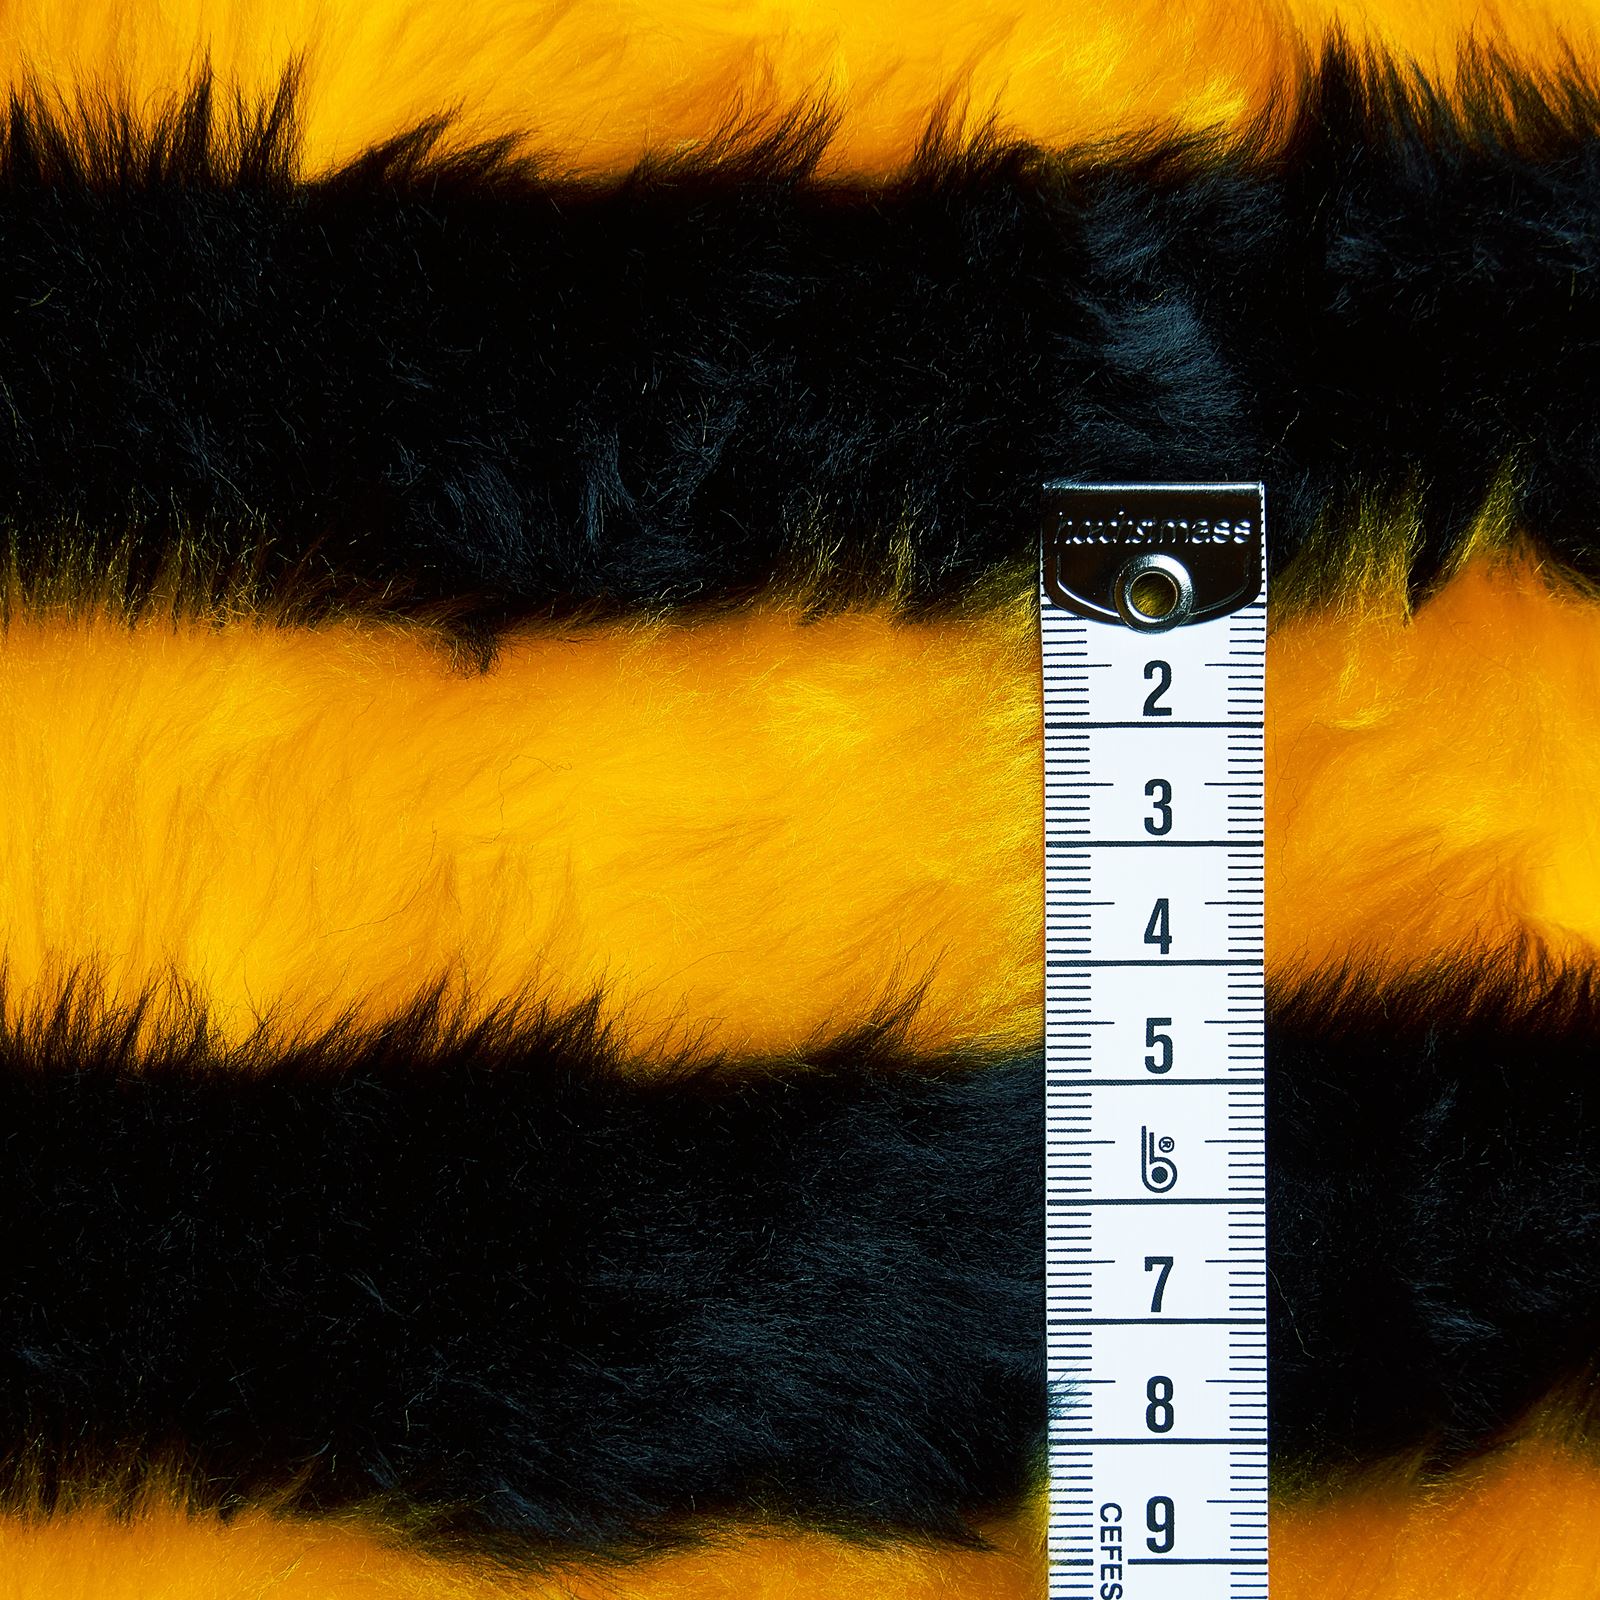 Maya the Bee - woven fur